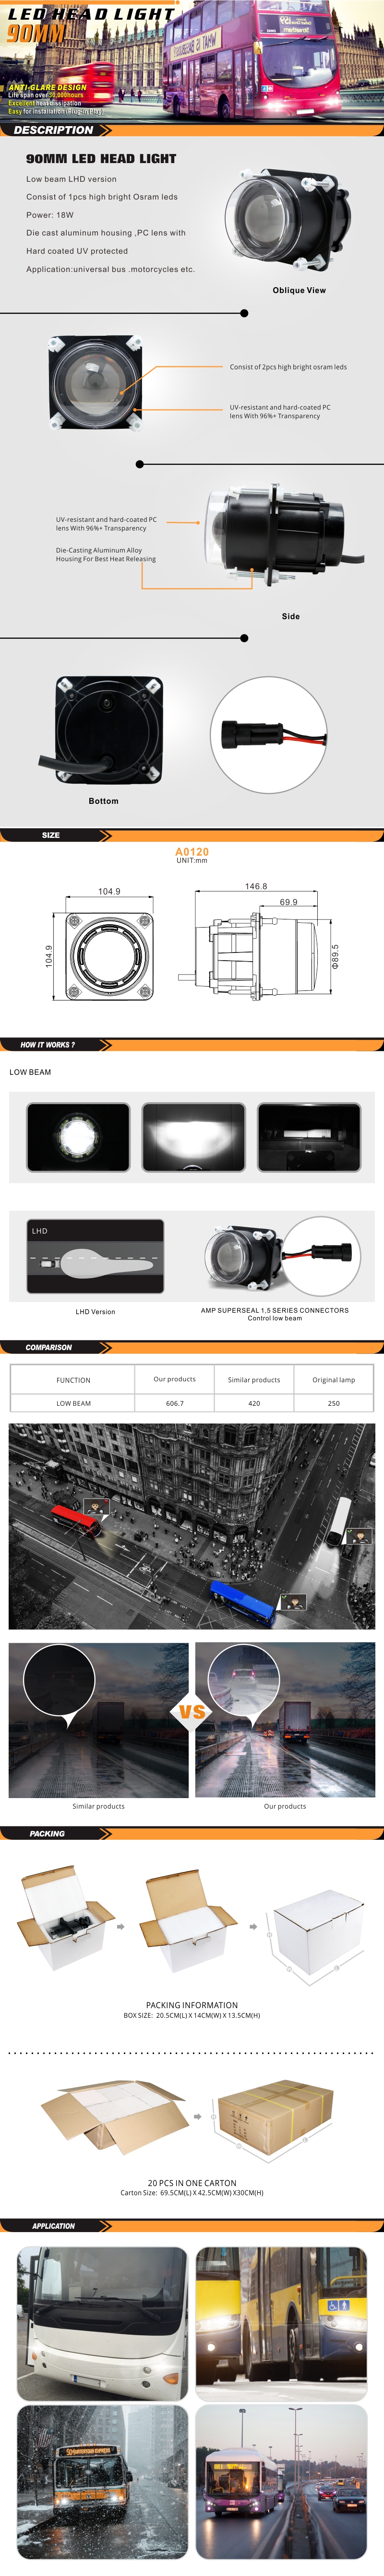 A0120-标准灯产品描述页